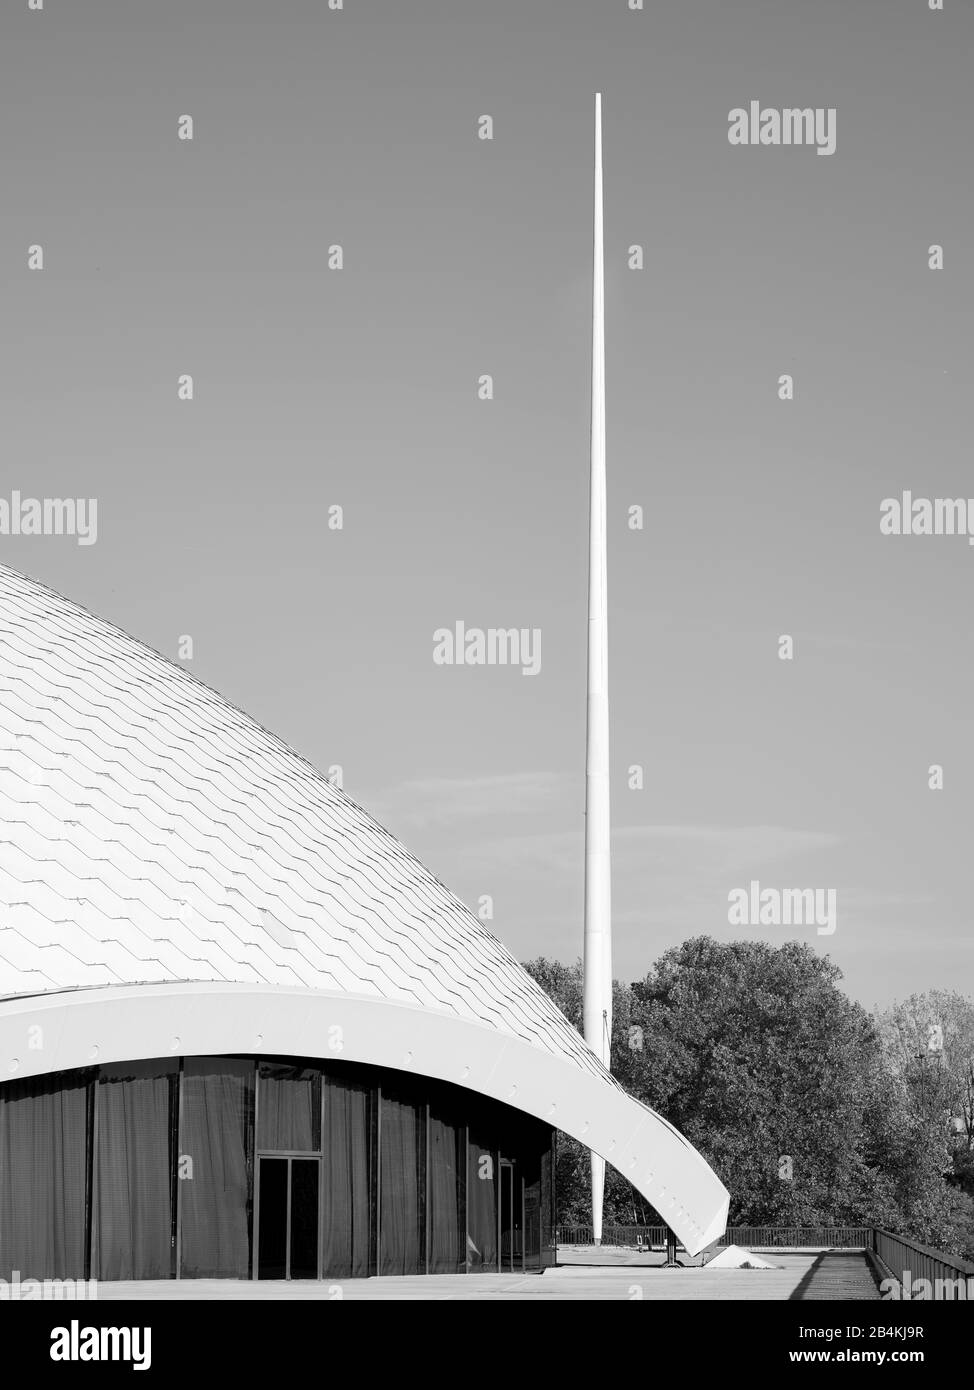 Das Schalendach und seine Randversteifung der Jahrhunderthalle Frankfurt mit dem charakteristischen Mast Stock Photo